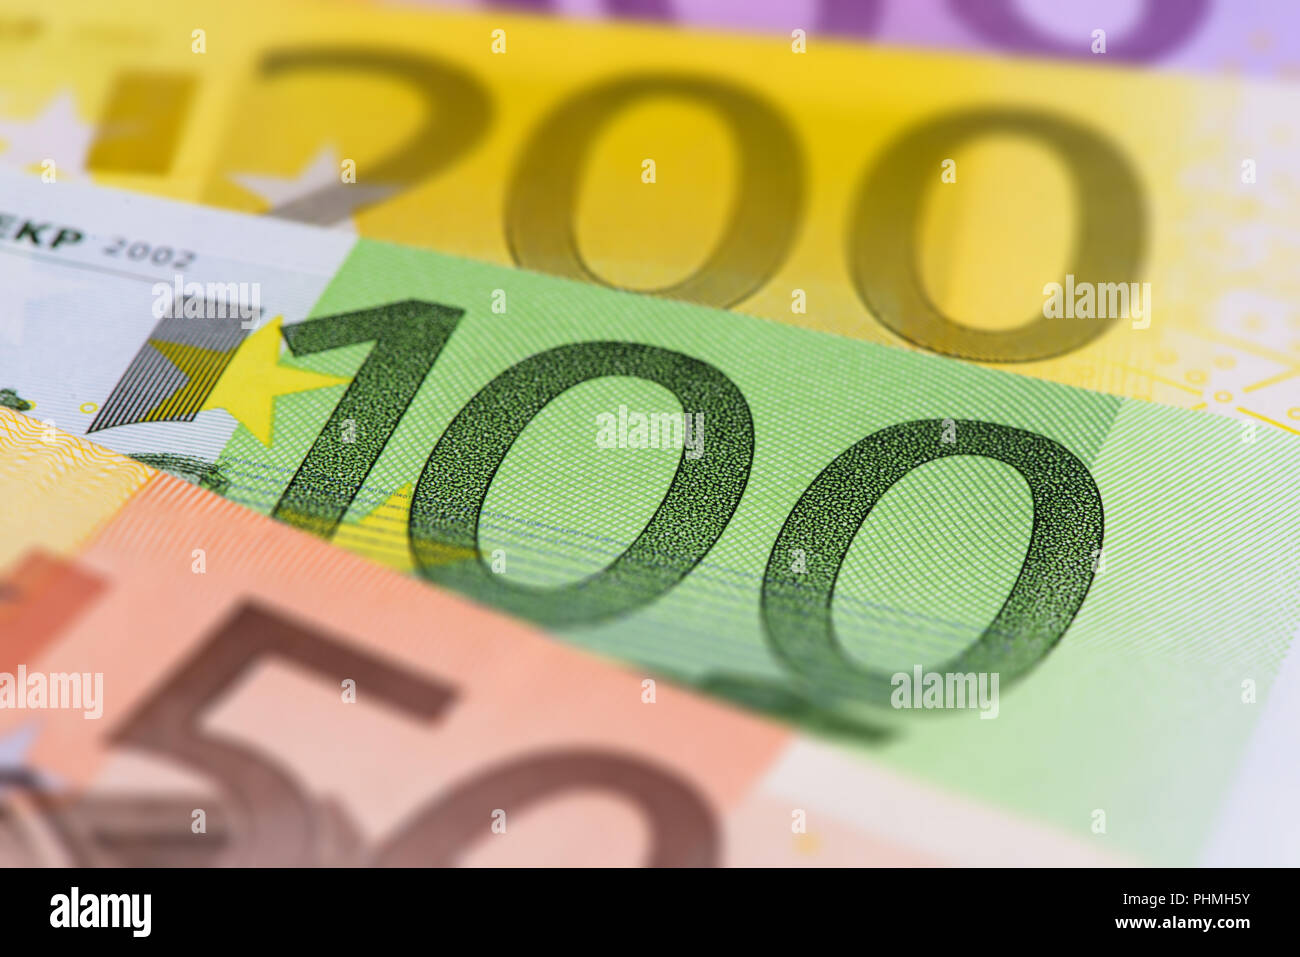 Beaucoup de billets de monnaie européenne Banque D'Images